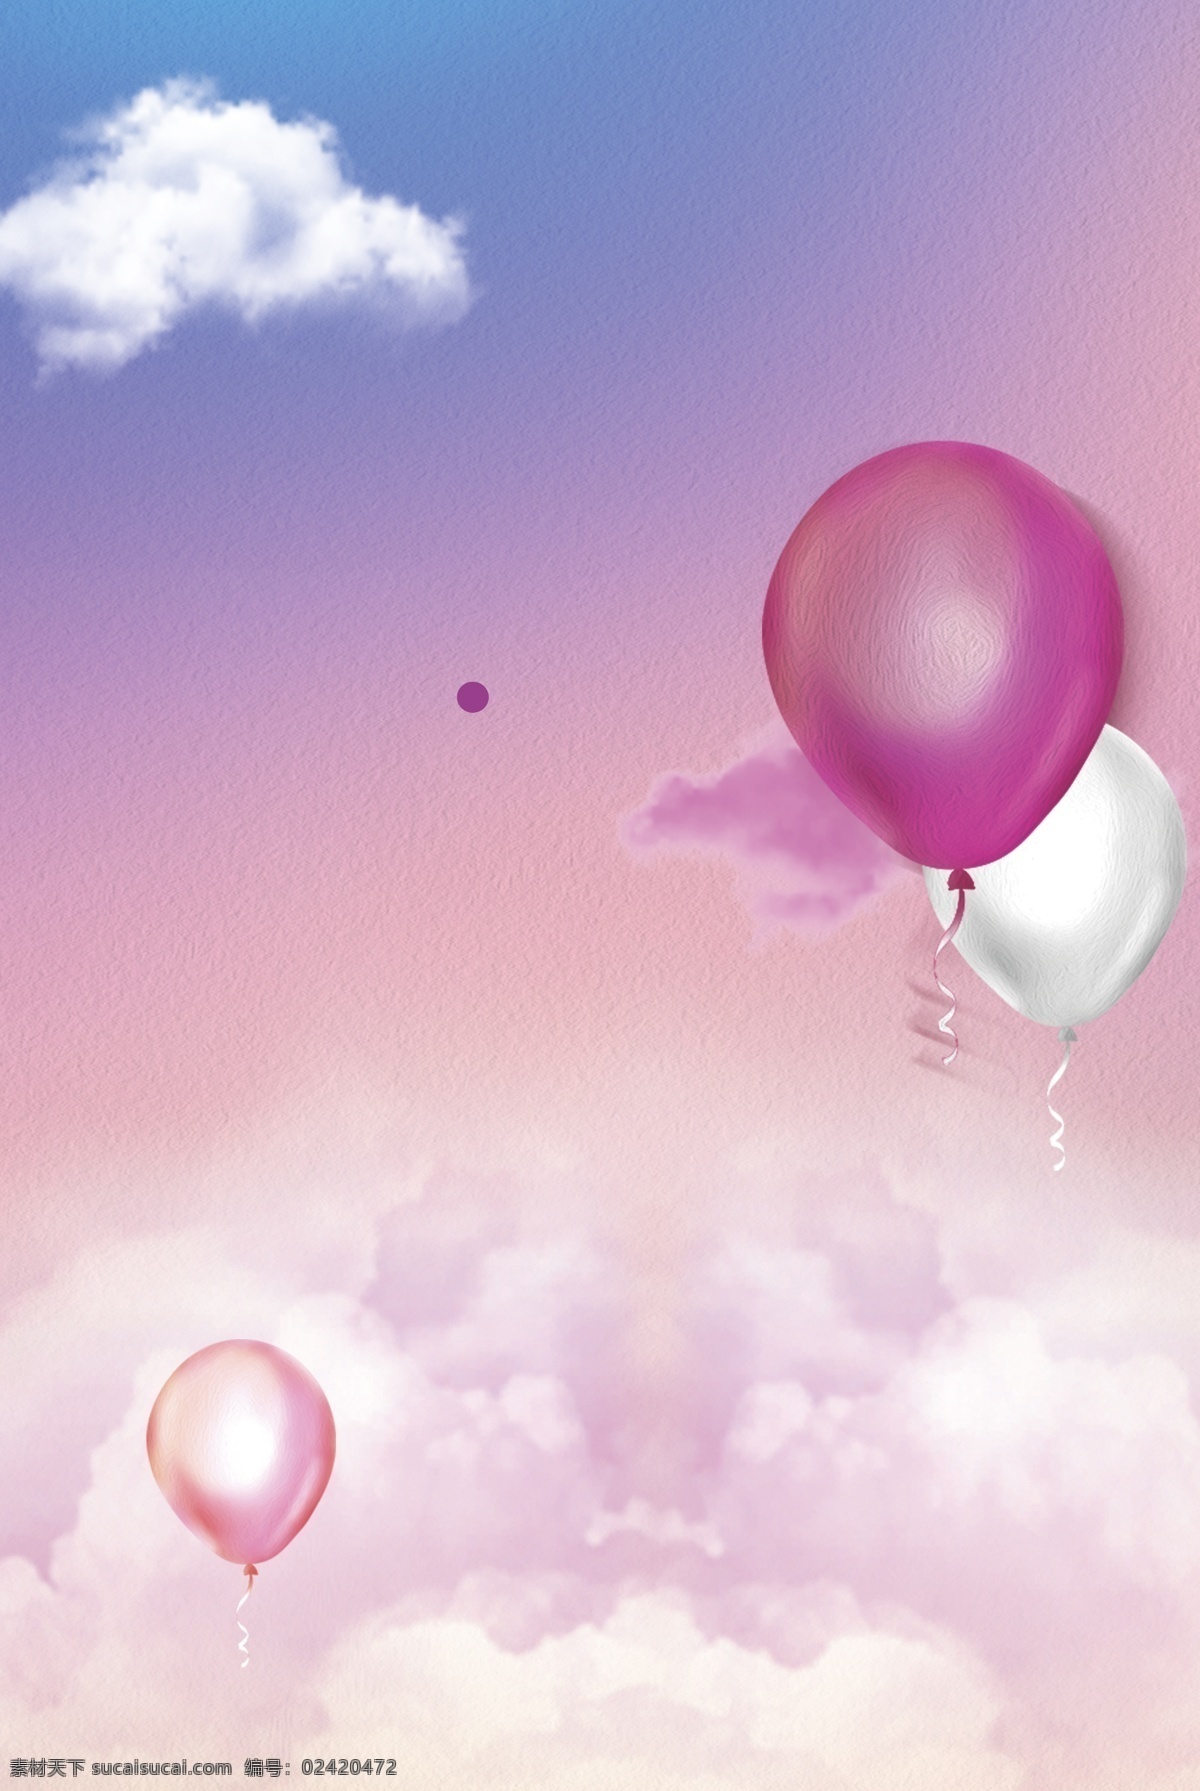 粉色 可爱 气球 彩妆 大 促 背景 粉色背景 可爱背景 气球背景 彩妆背景 蓝天白云 大促背景